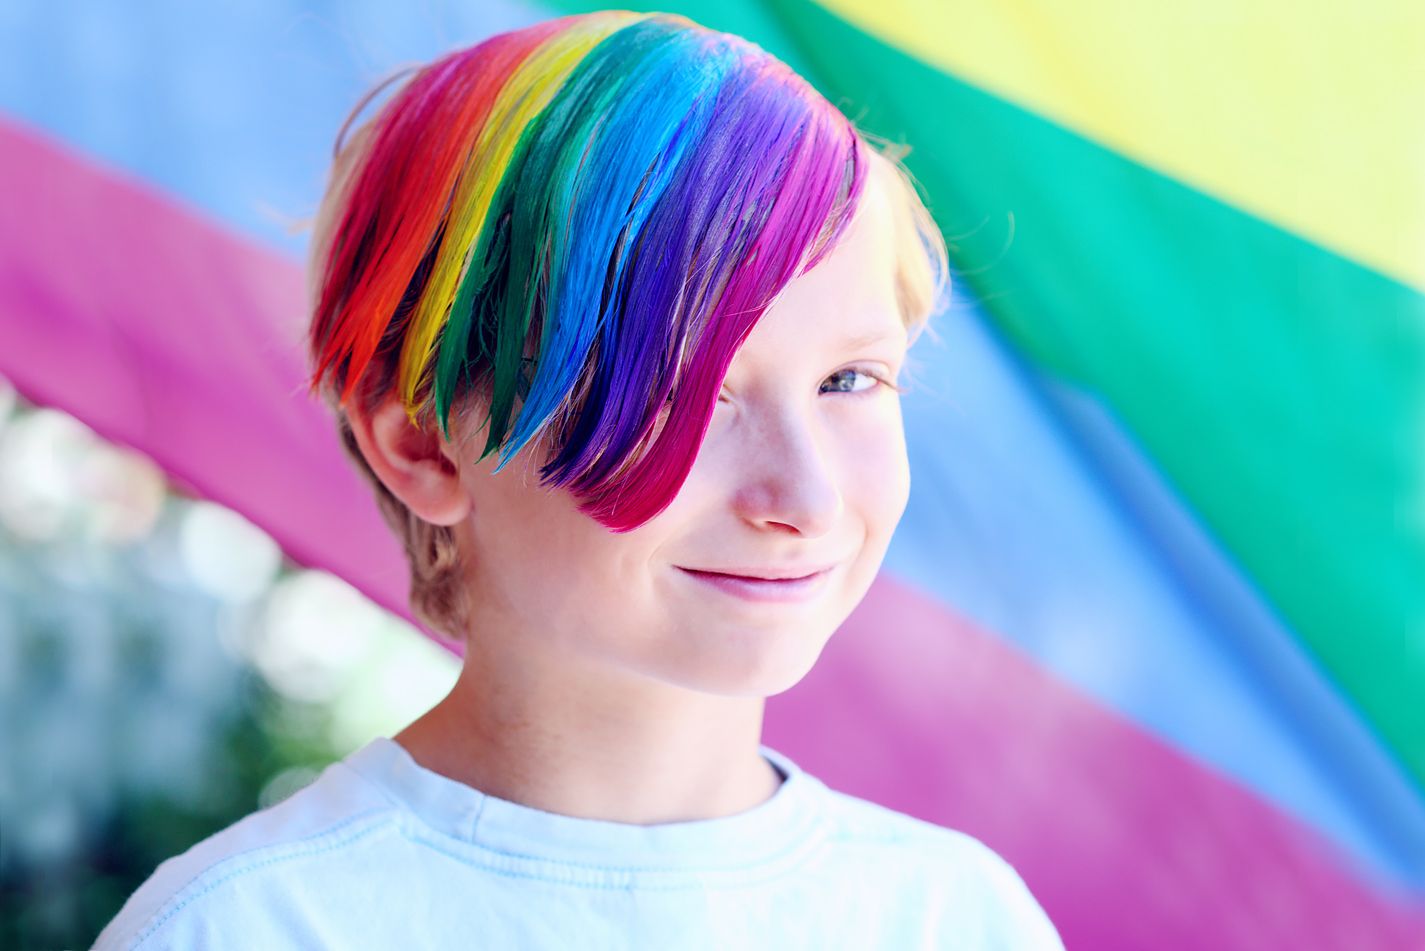 Ung person med regnbuefarget hår.